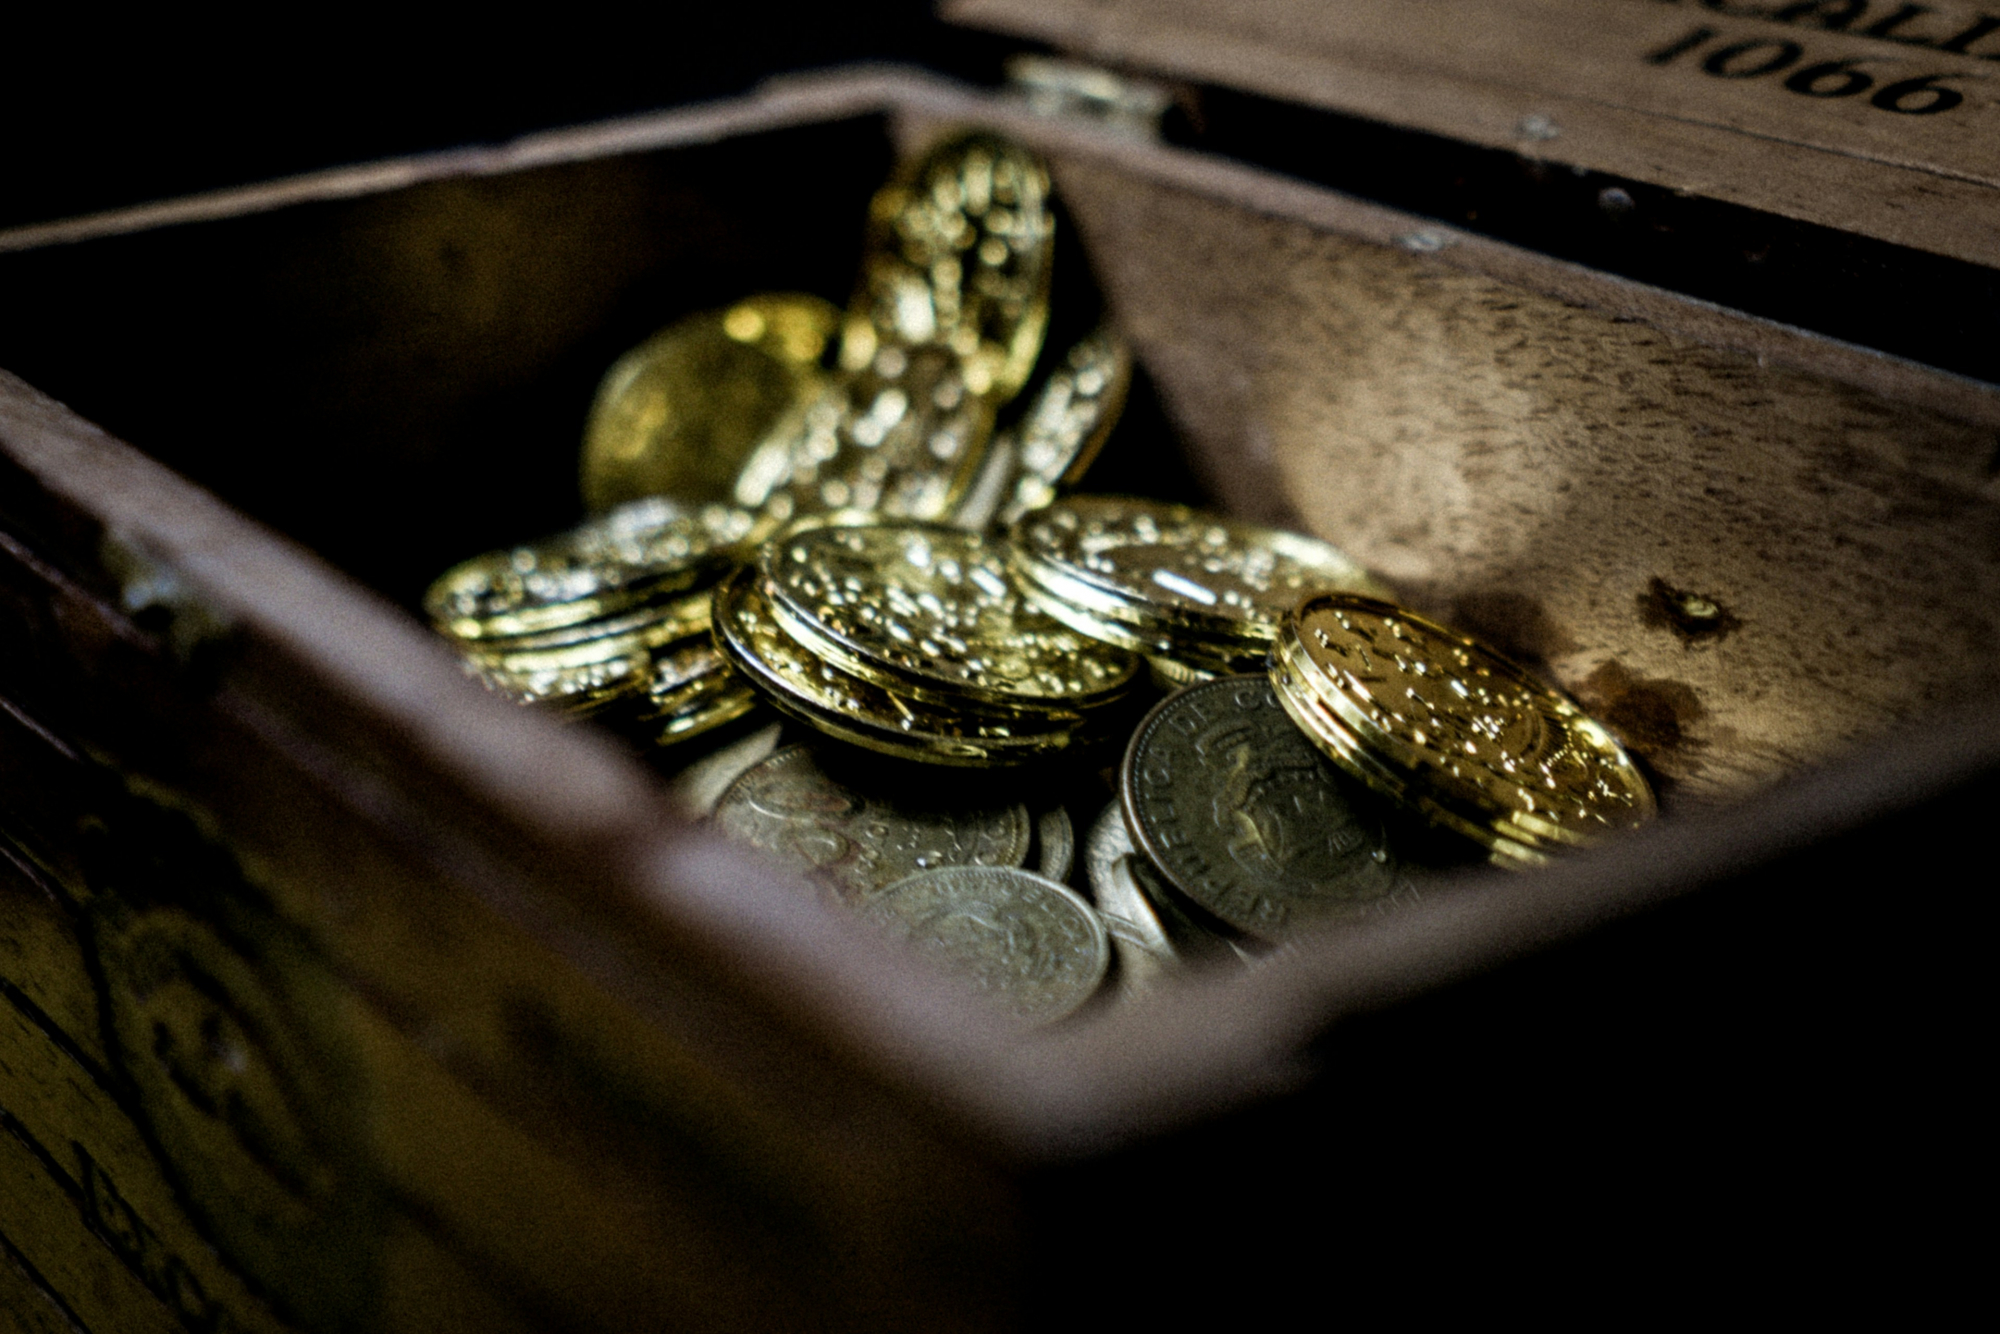 découvrez les trésors cachés et les merveilles insoupçonnées avec treasures, la référence en matière de trouvailles extraordinaires.